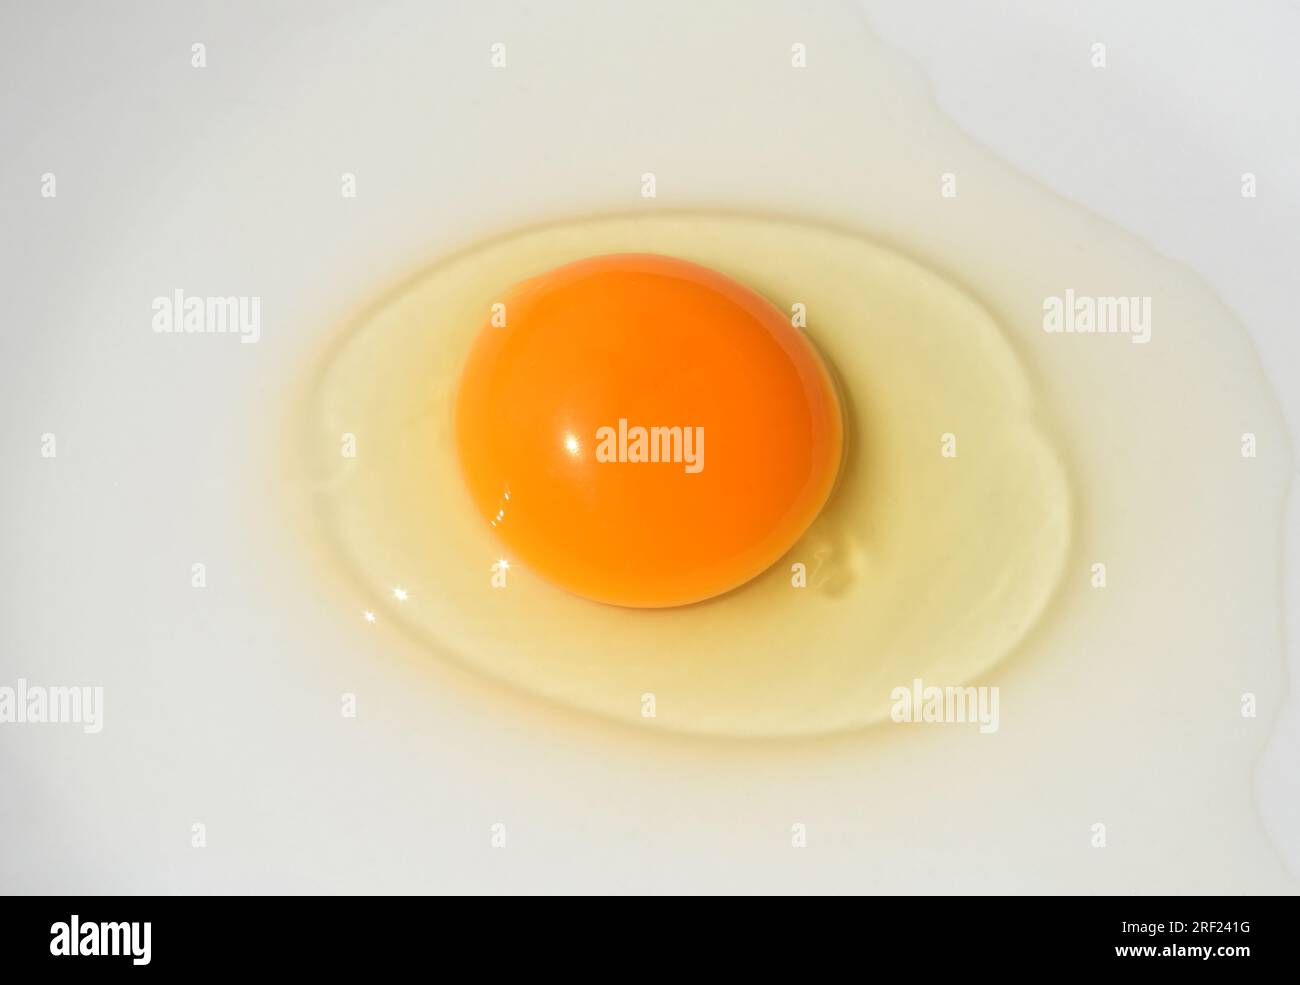 Ei, Huehnerei bzw. Eier ist ein wichtiges tierisches Lebensmittel. Eier, Hühnereier oder Eier sind ein wichtiges Tierfutter. Stockfoto